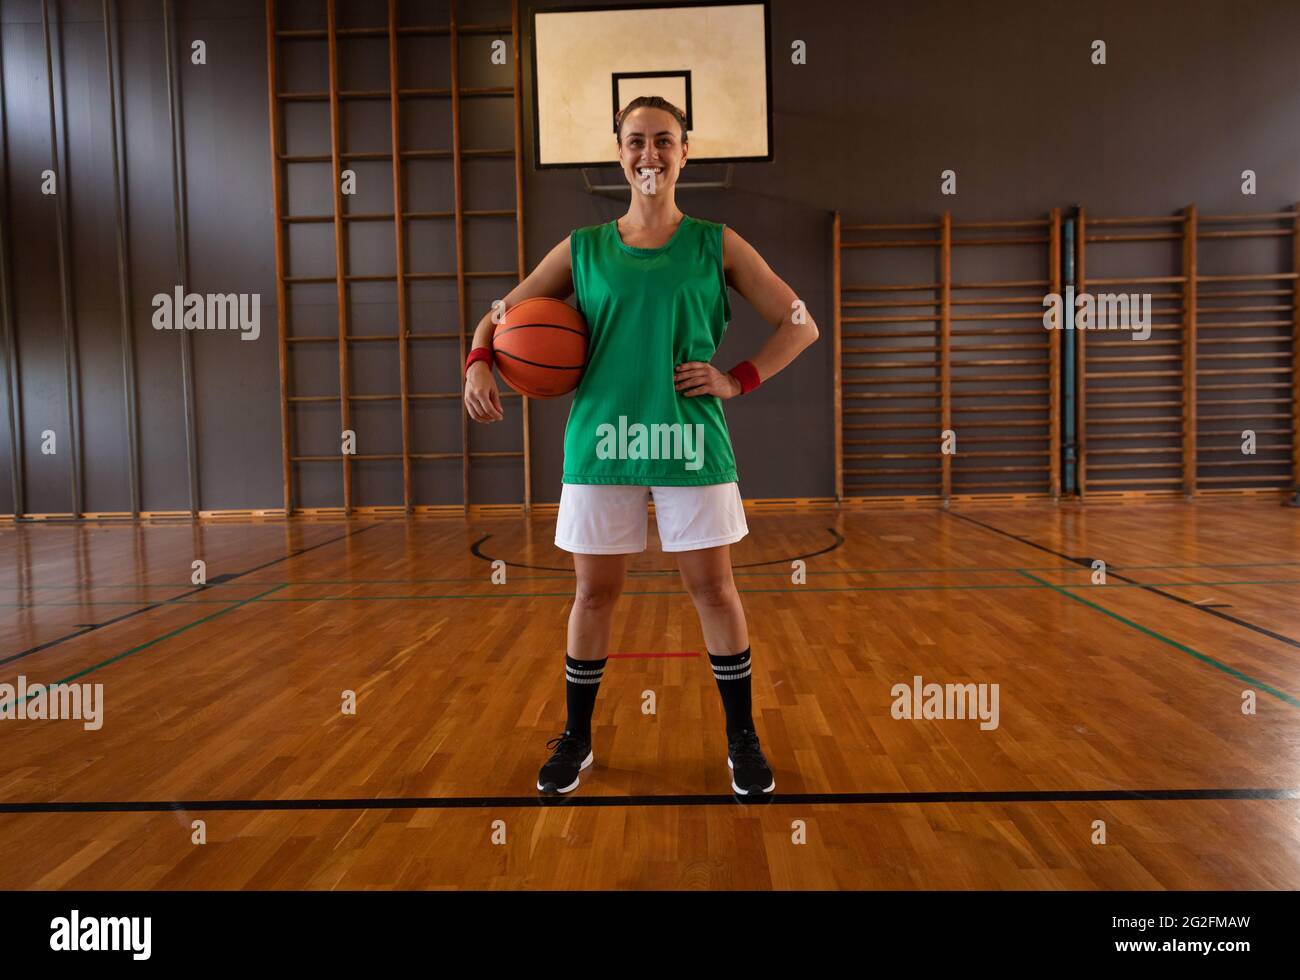 Portrait du joueur de basket-ball de race blanche tenant le ballon Banque D'Images